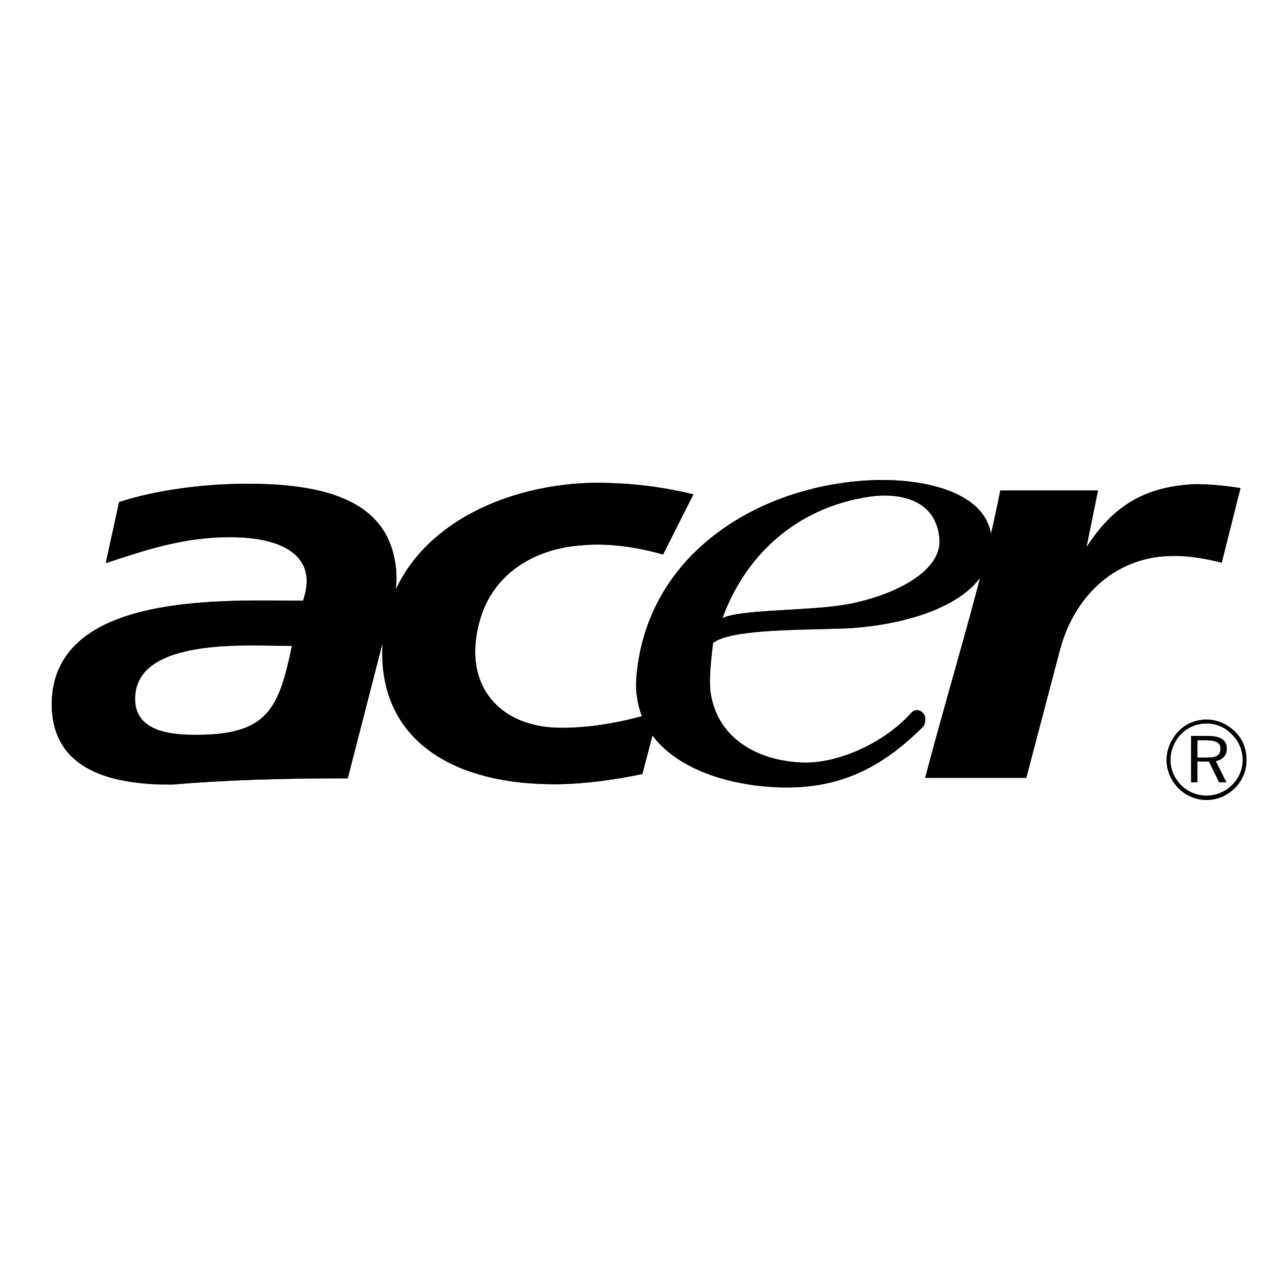 Acer logo in black